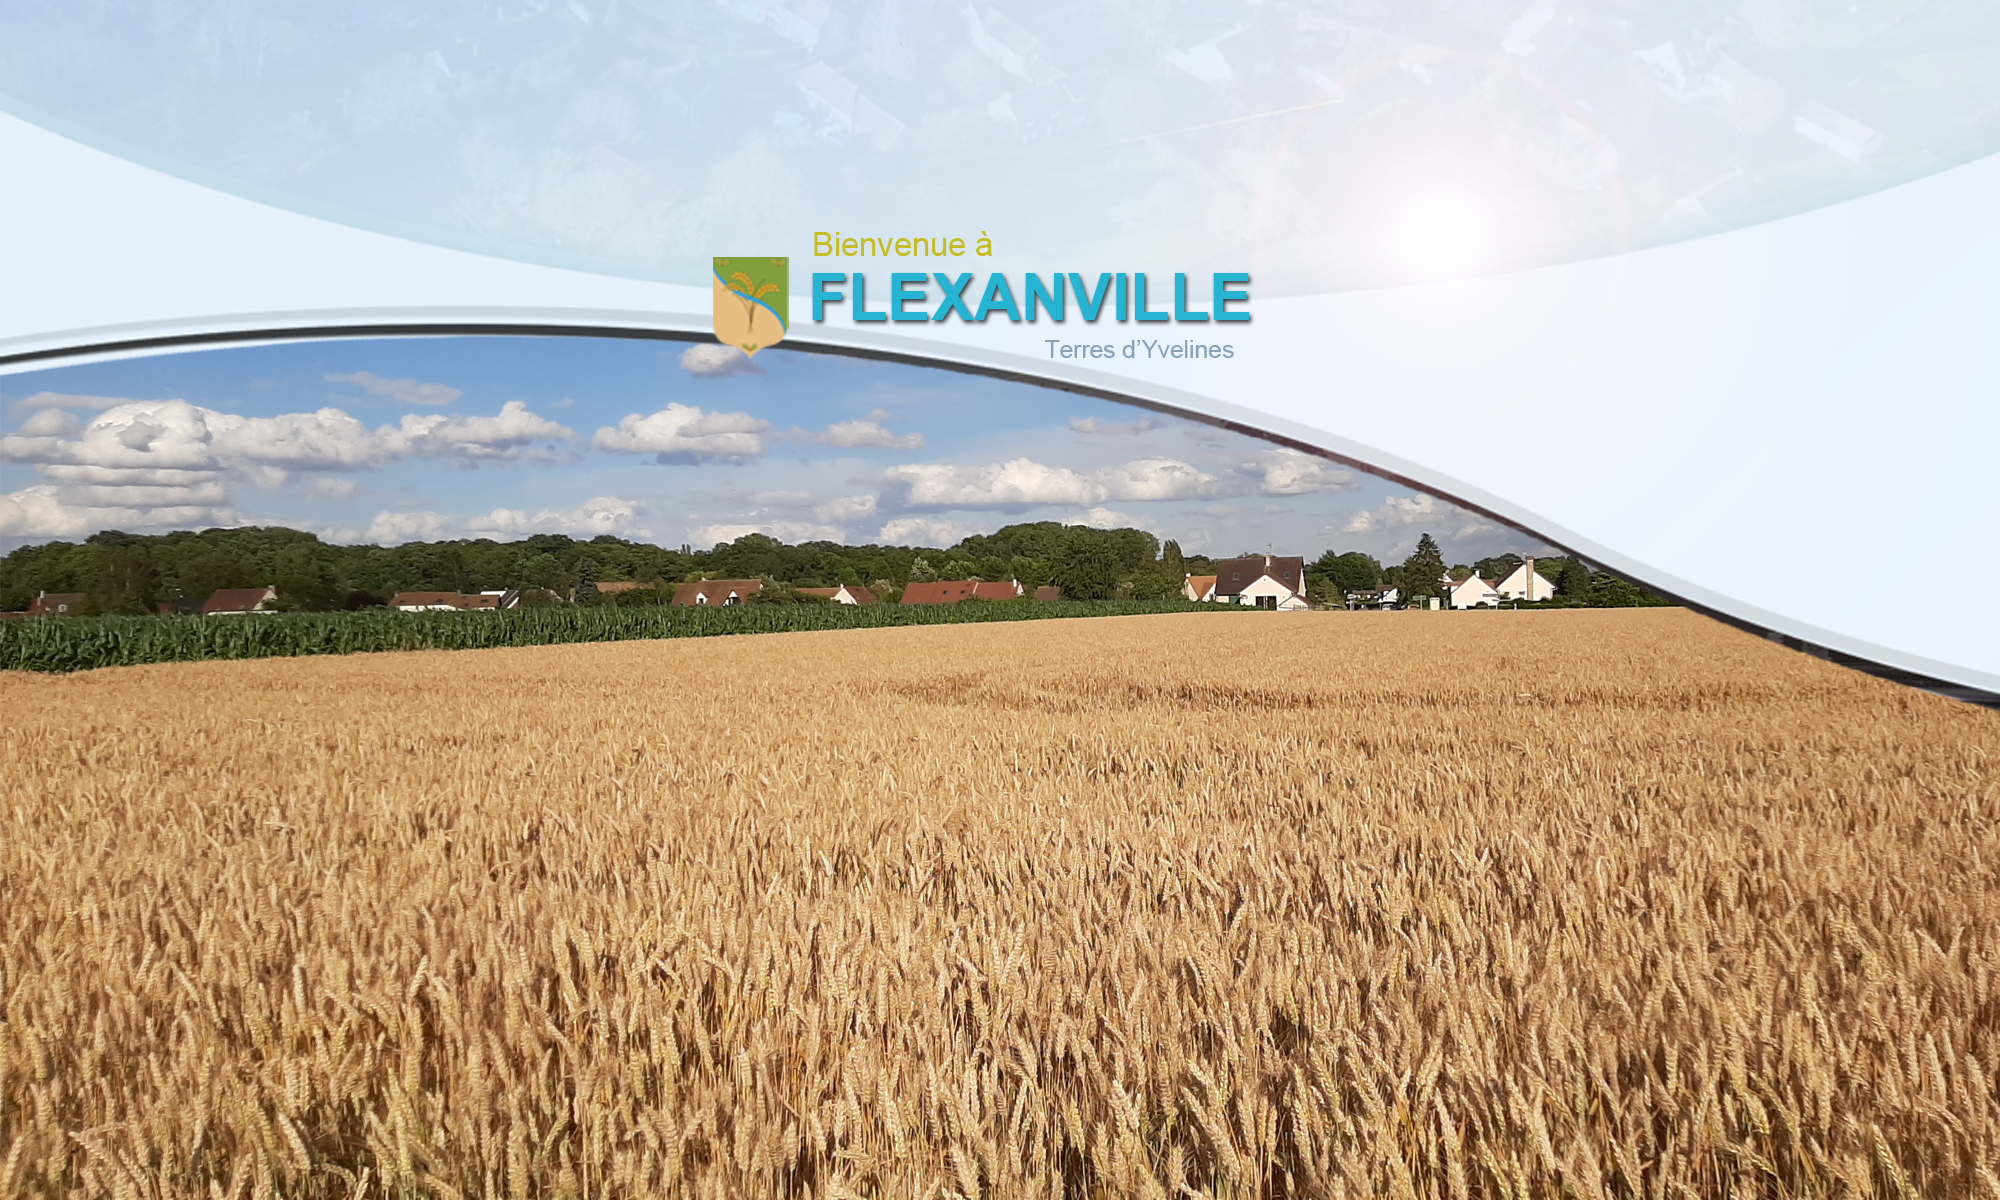 Flexanville